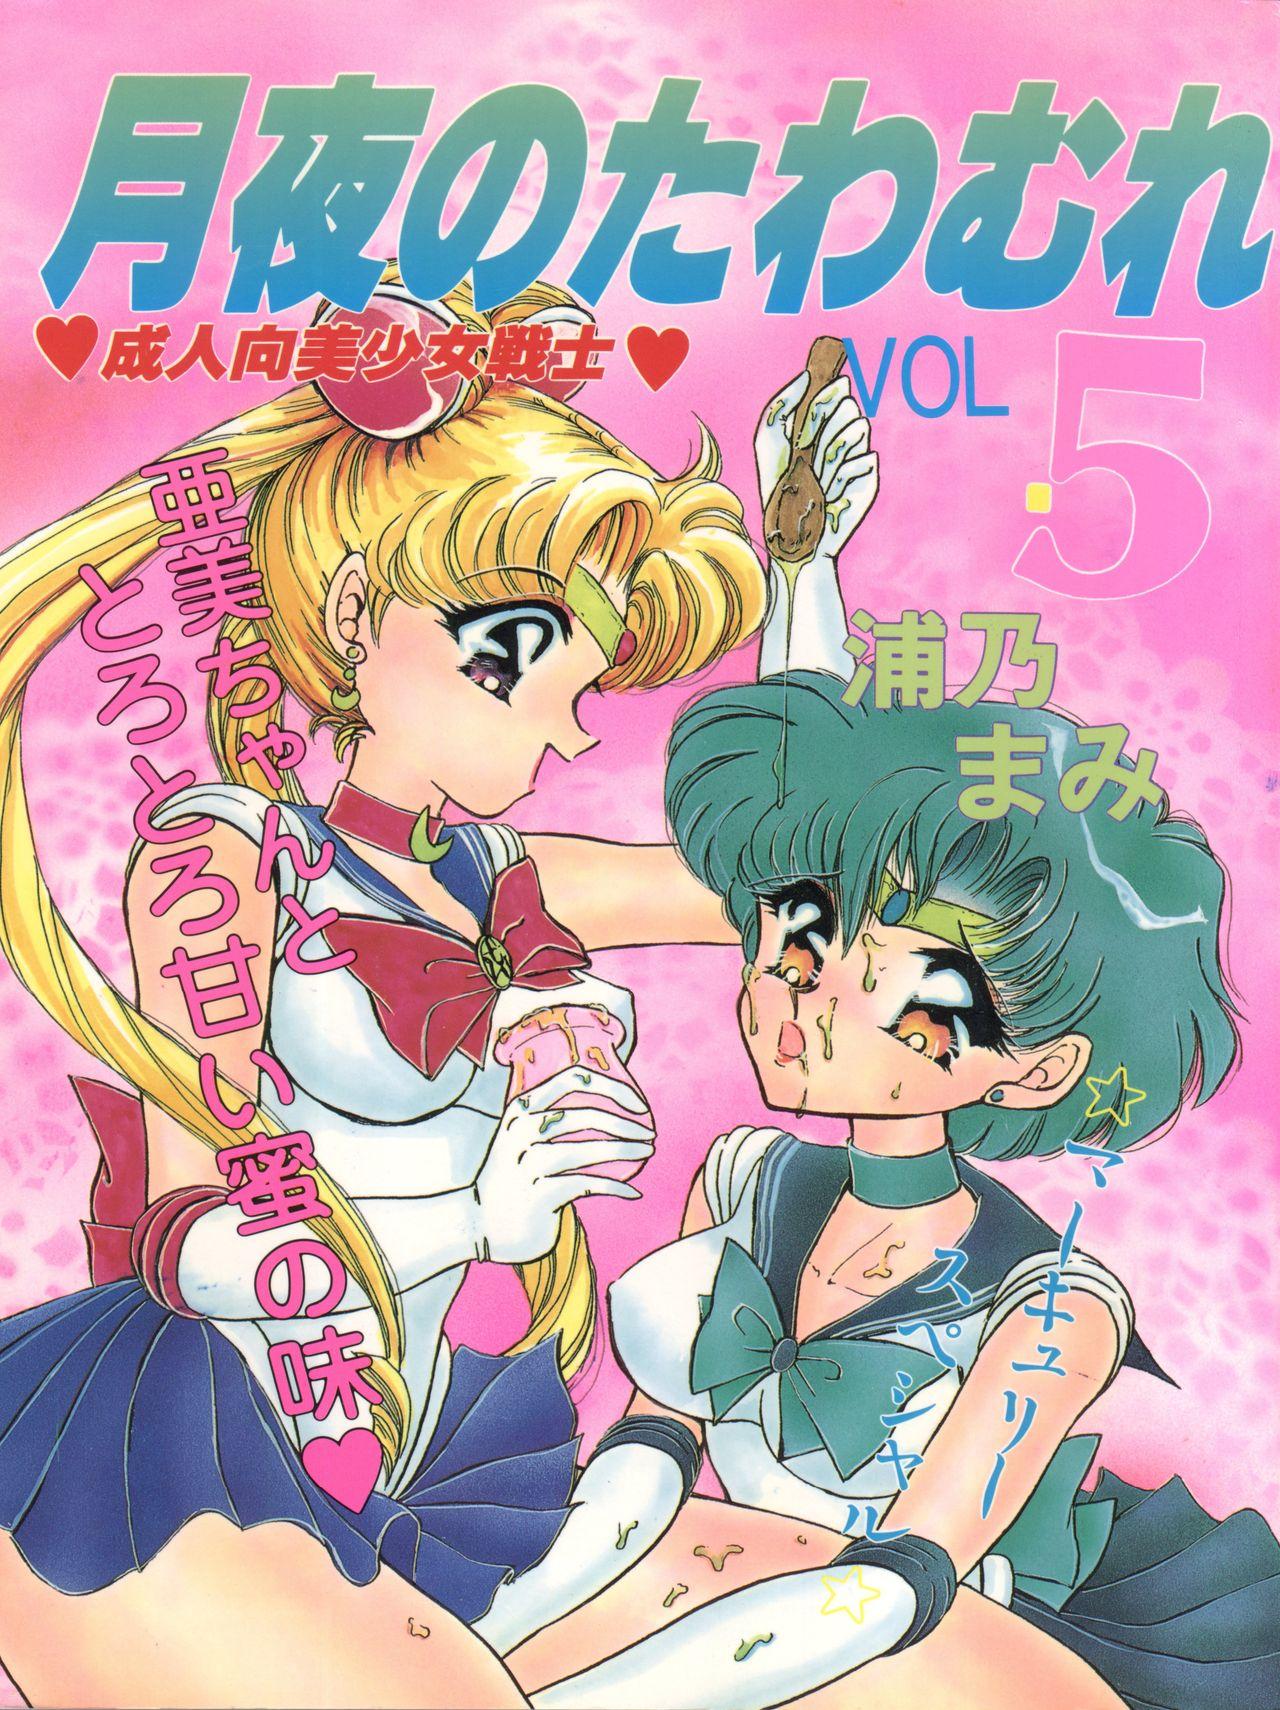 Hard Core Free Porn Tsukiyo no Tawamure 5 - Sailor moon Bikini - Picture 1